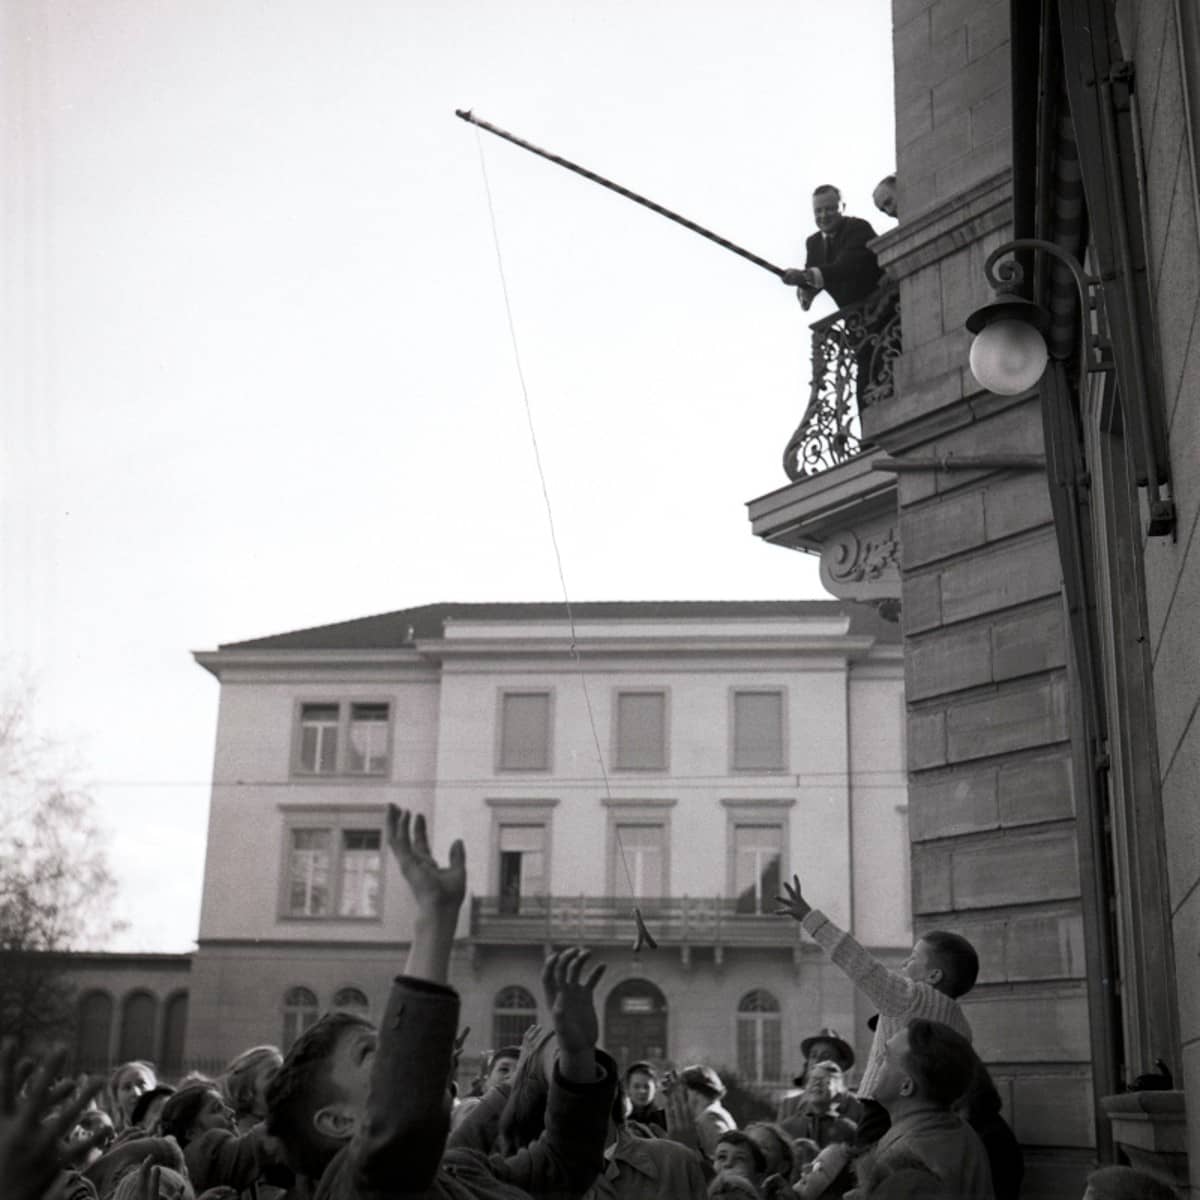 Ein Mann steht auf einem Balkon mit einer Angelrute, unter ihm steht eine Memge von Kindern, die etwas aufzufangen versuchen. 